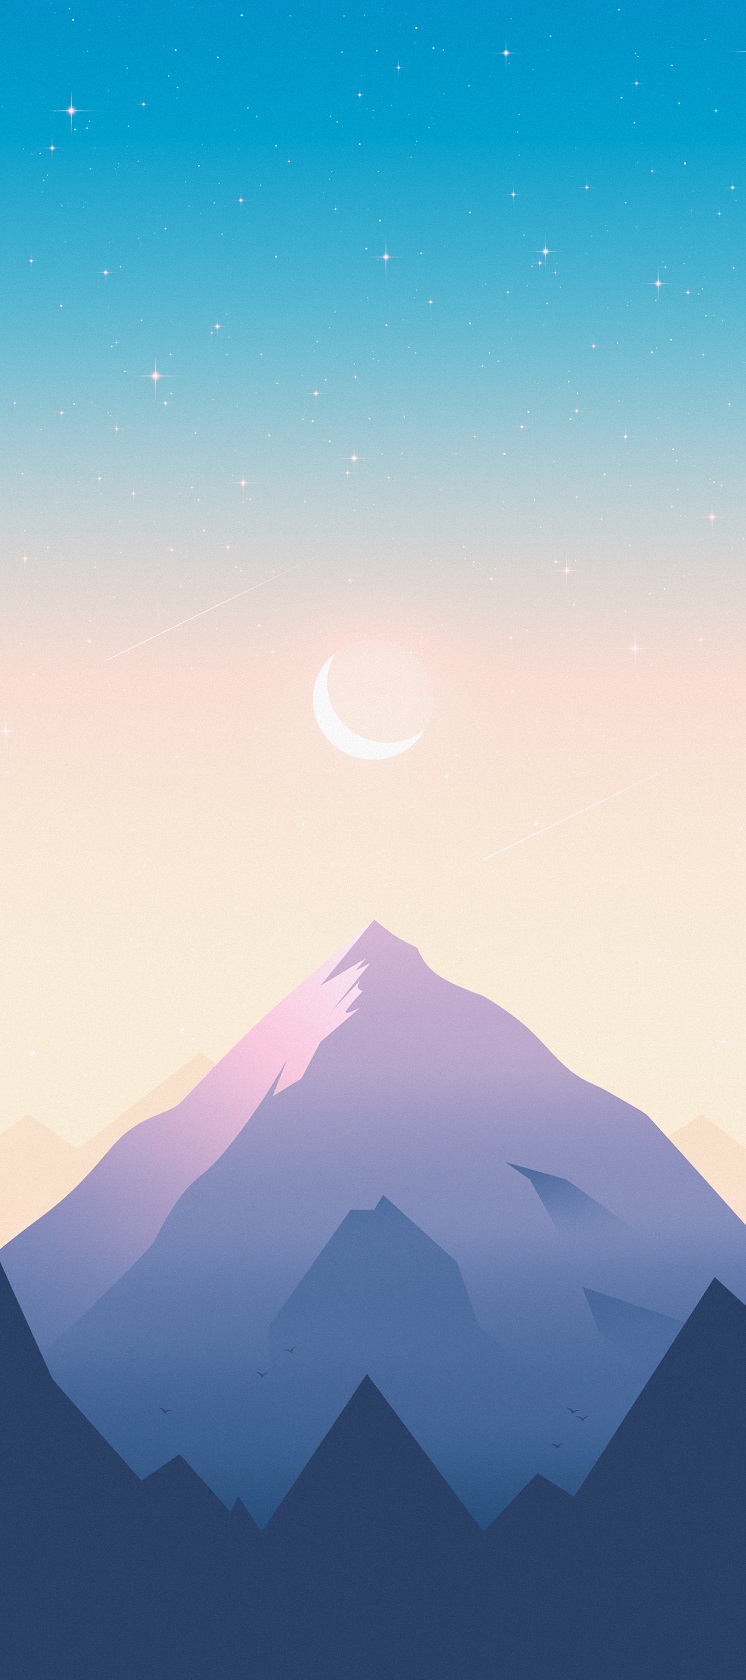 mountain-valley-iphone-wallpaper-axellvak-sunsrise-moon